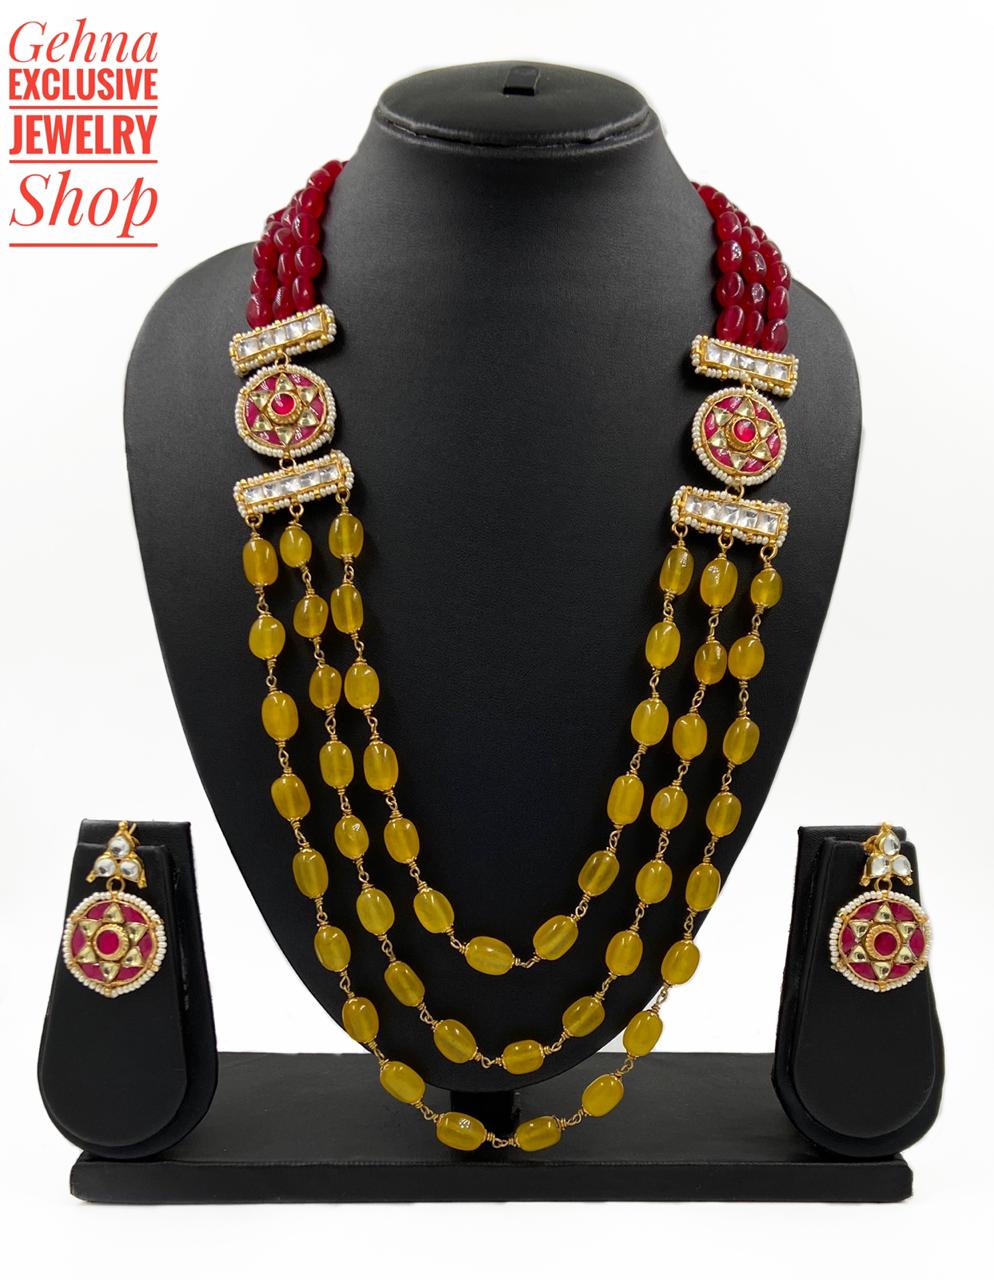 Buy Semi Precious Yellow Necklace Online – Gehna Shop